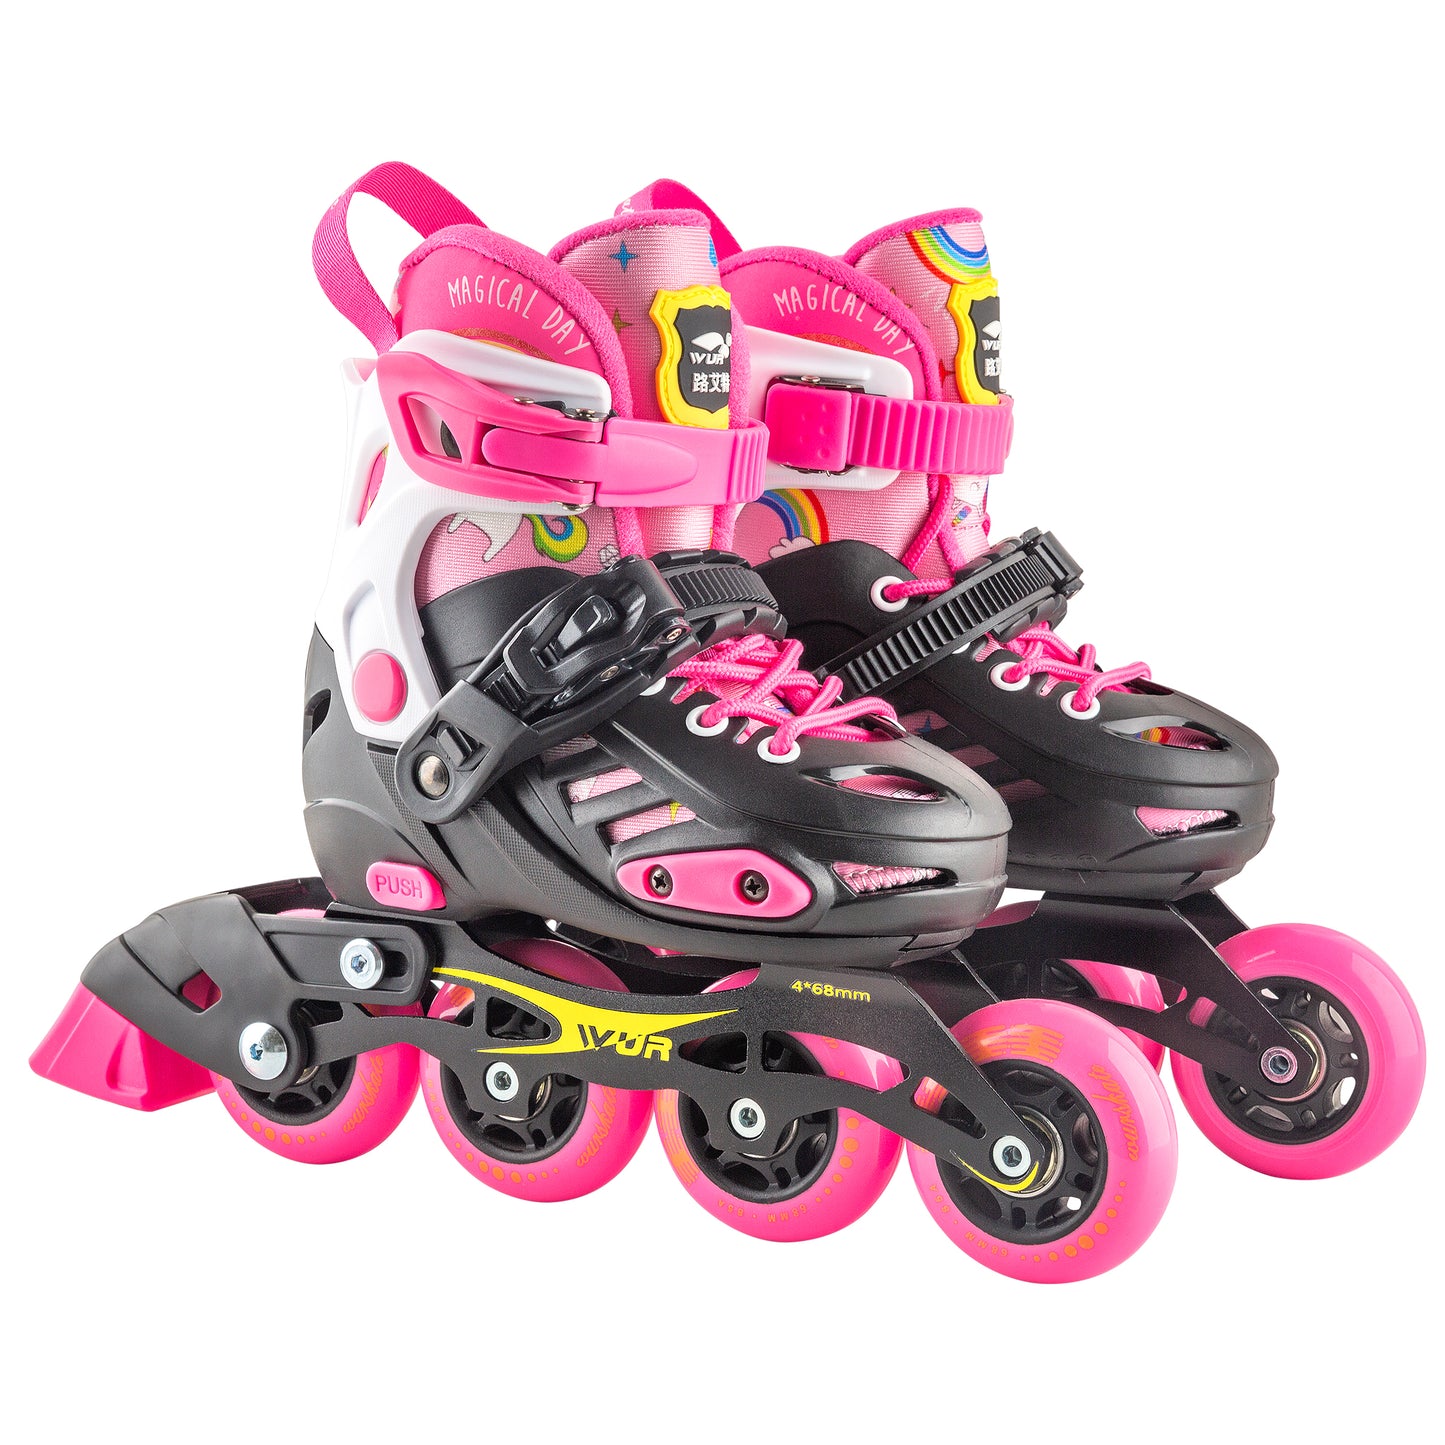 D101 Adjustable skate pink